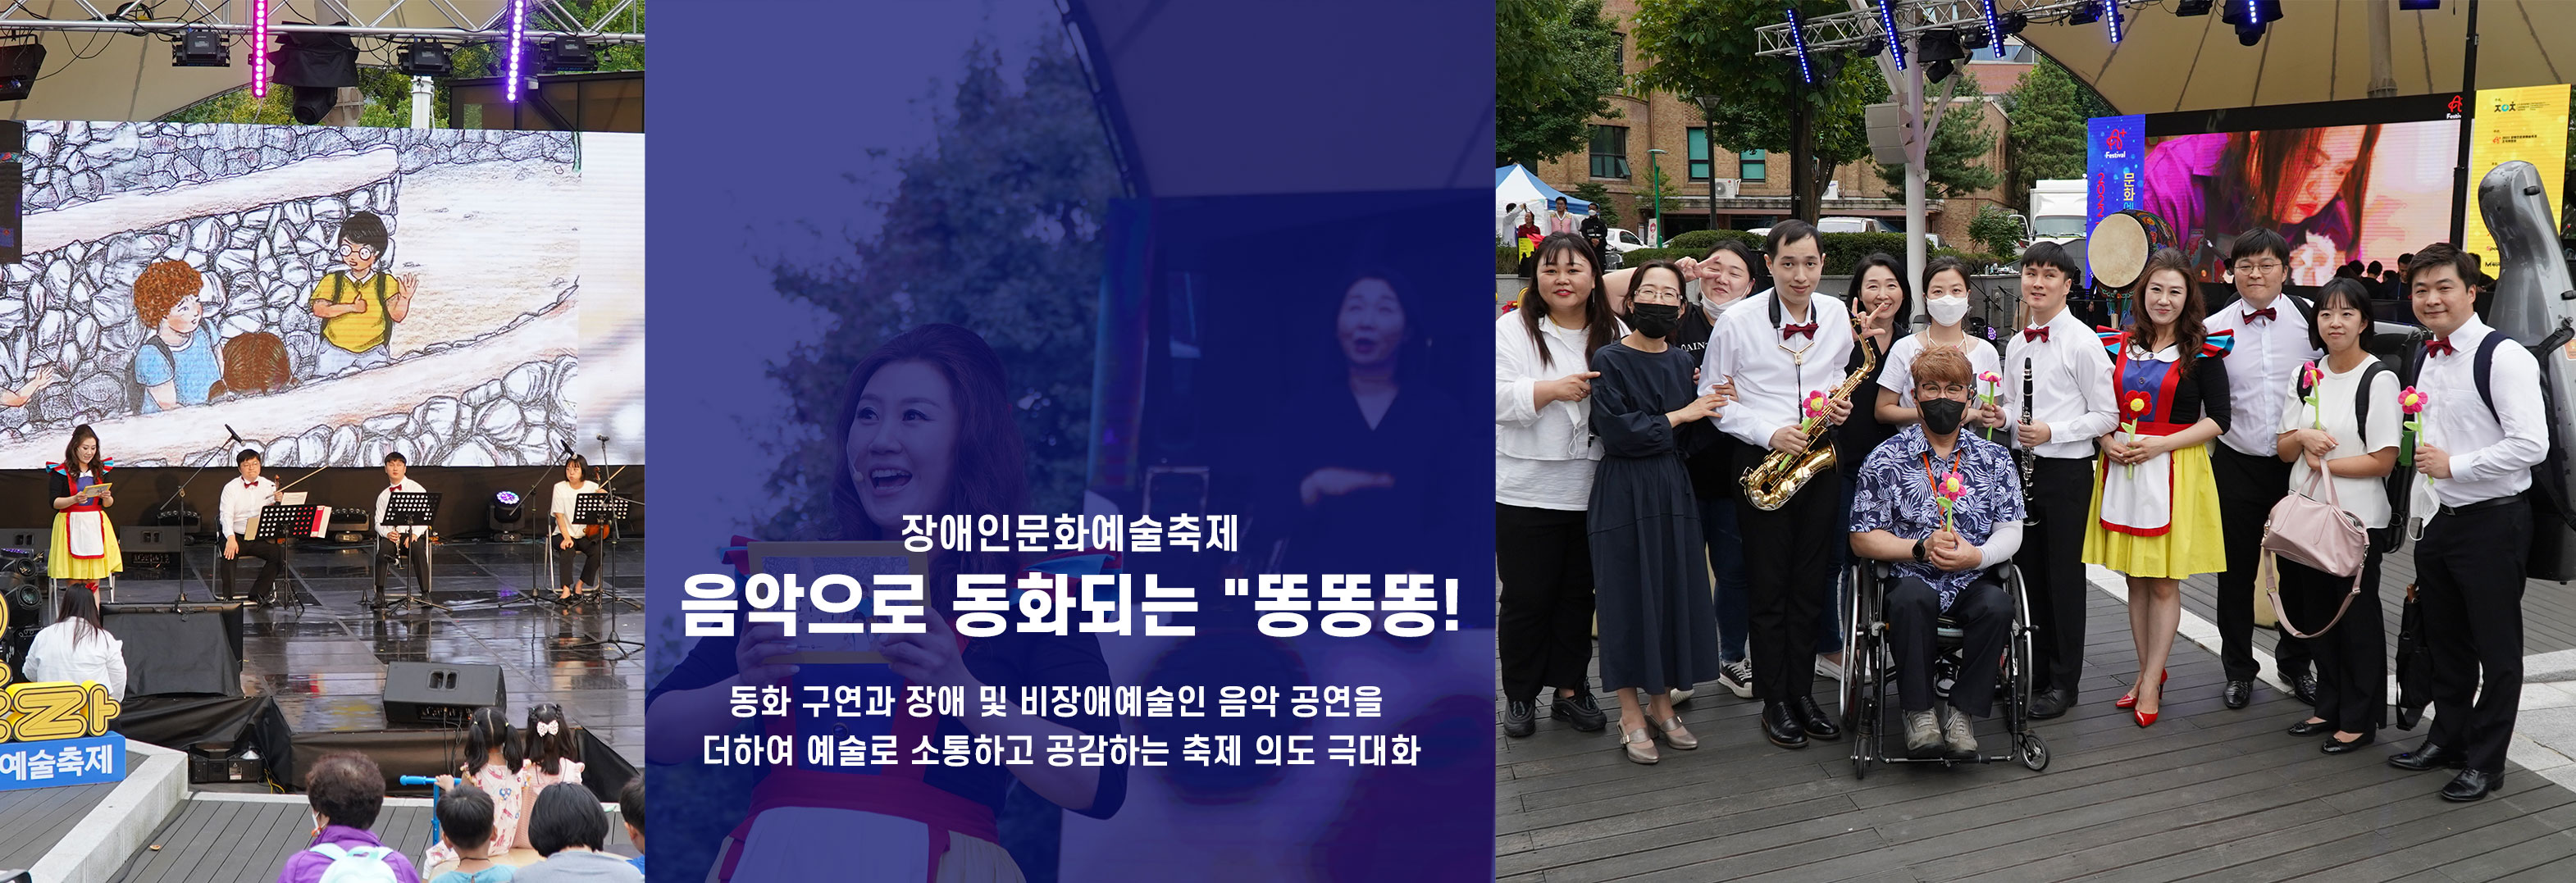 사)한국장애인문화협회 핵심사업을 소개합니다.